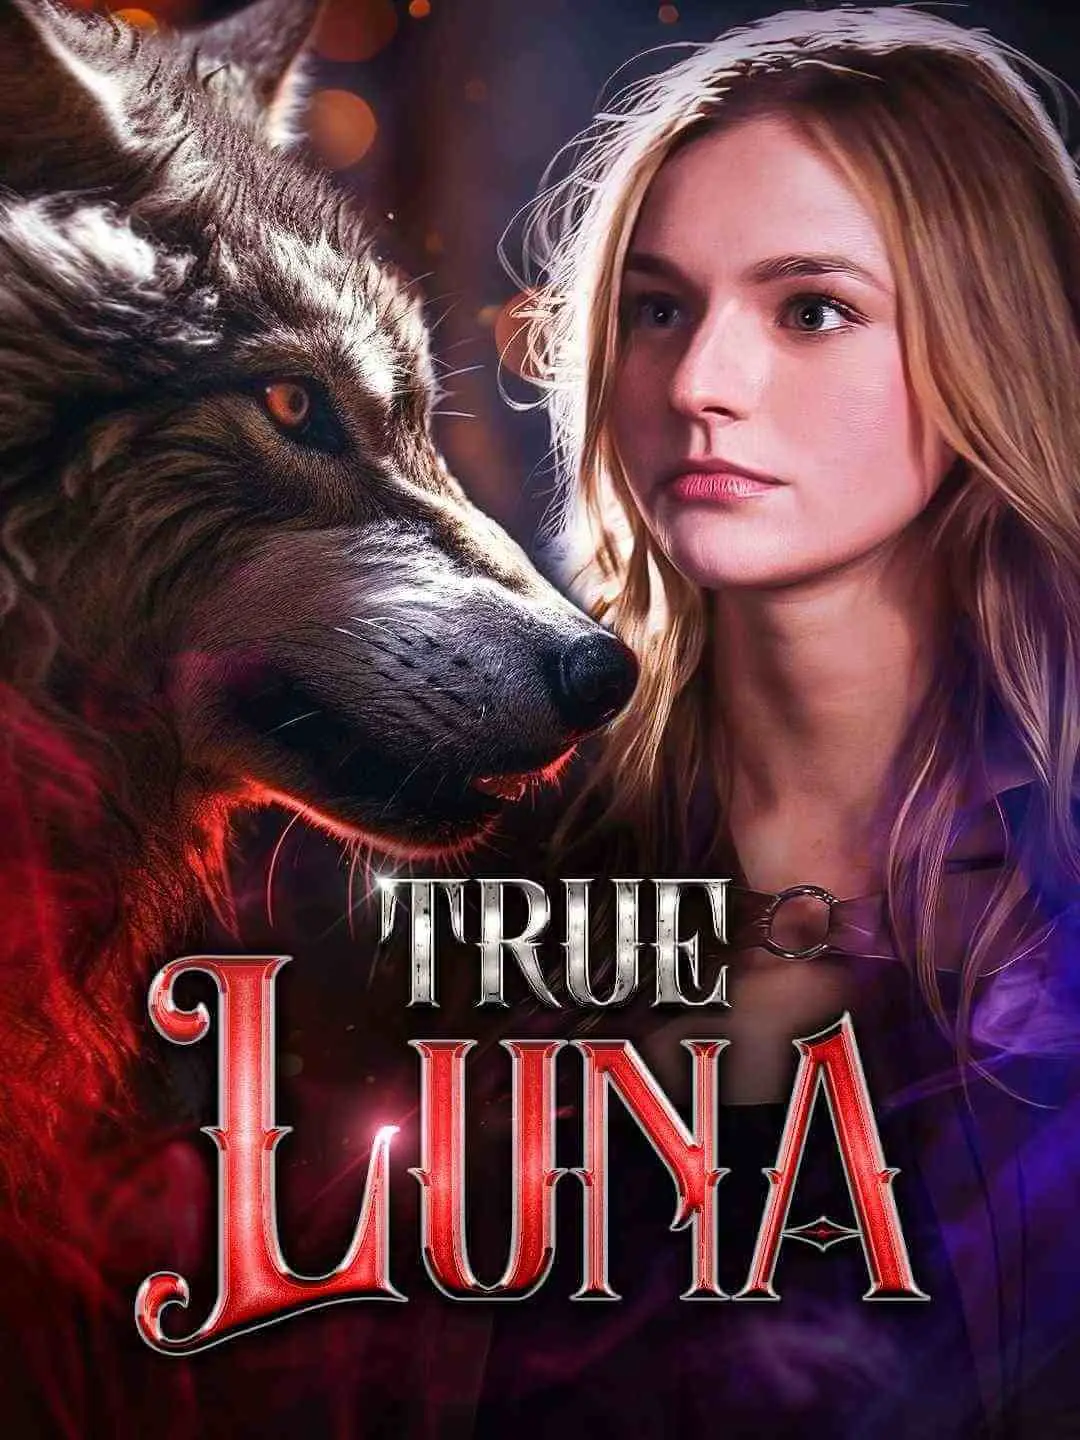 True Luna - Full Episodes for Free (Episode 1-55)